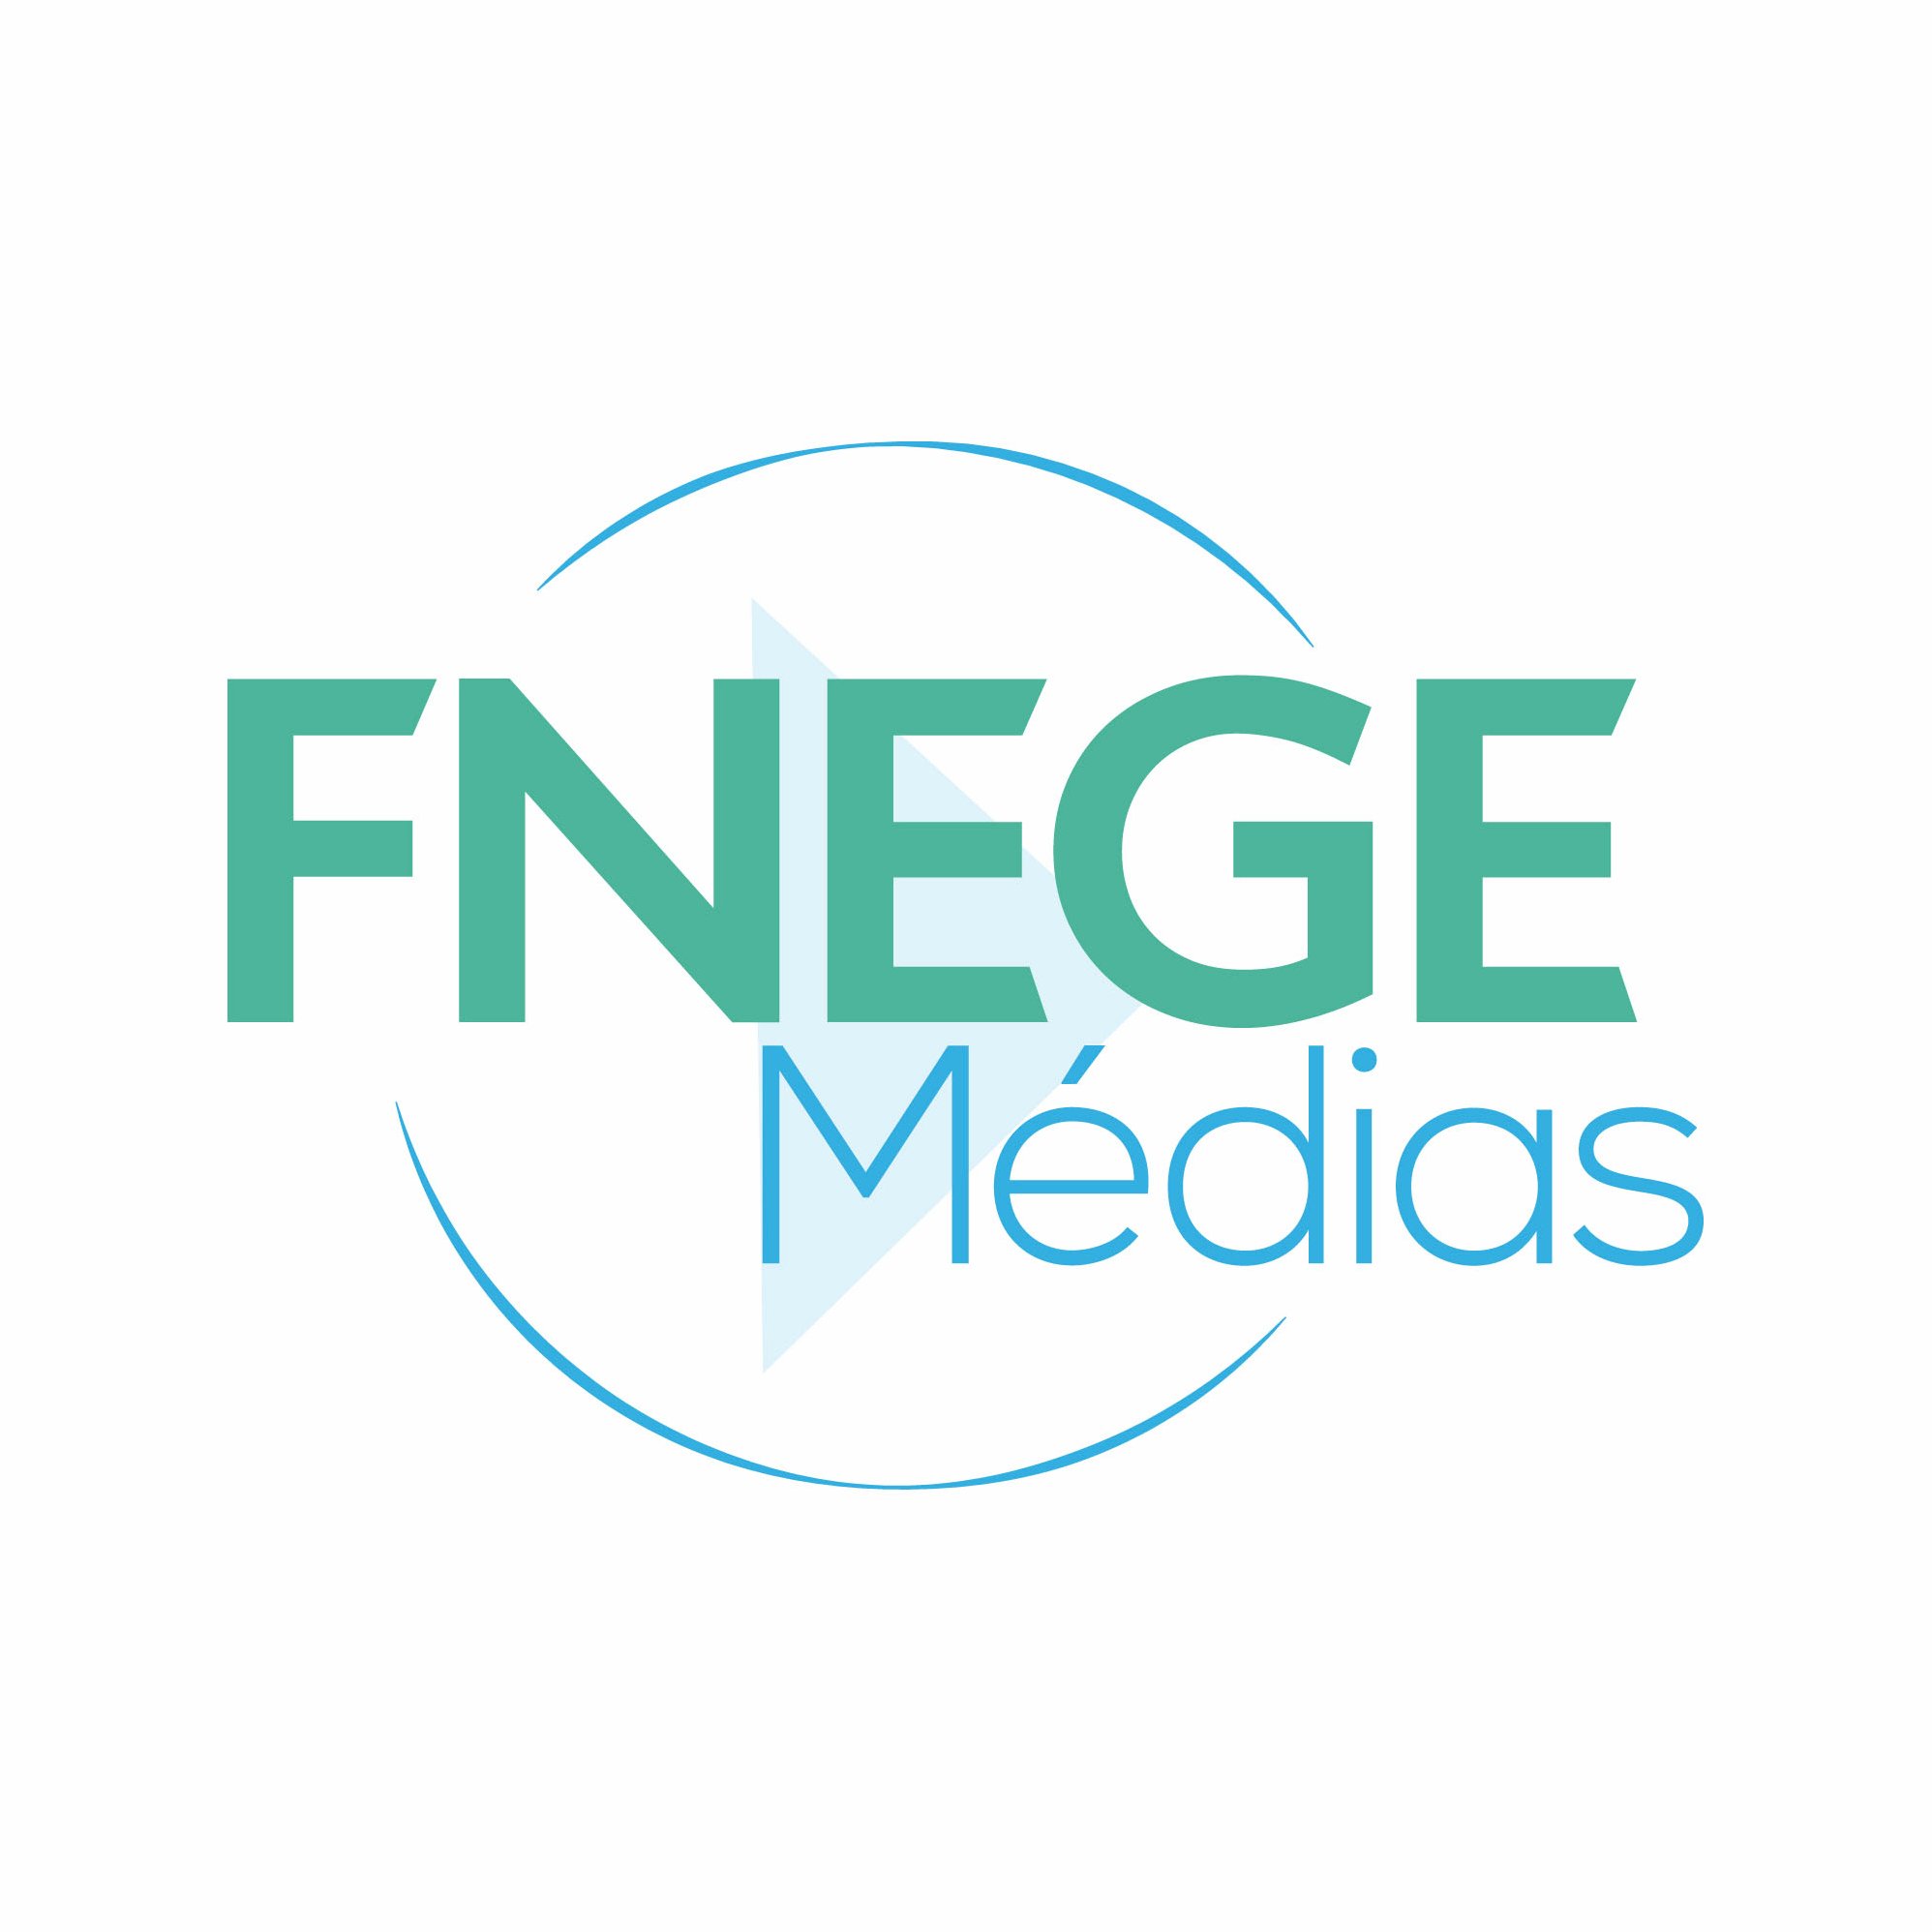 La 1ère plateforme collaborative #gestion et #management - Web TV / Média du management @ActuFNEGE